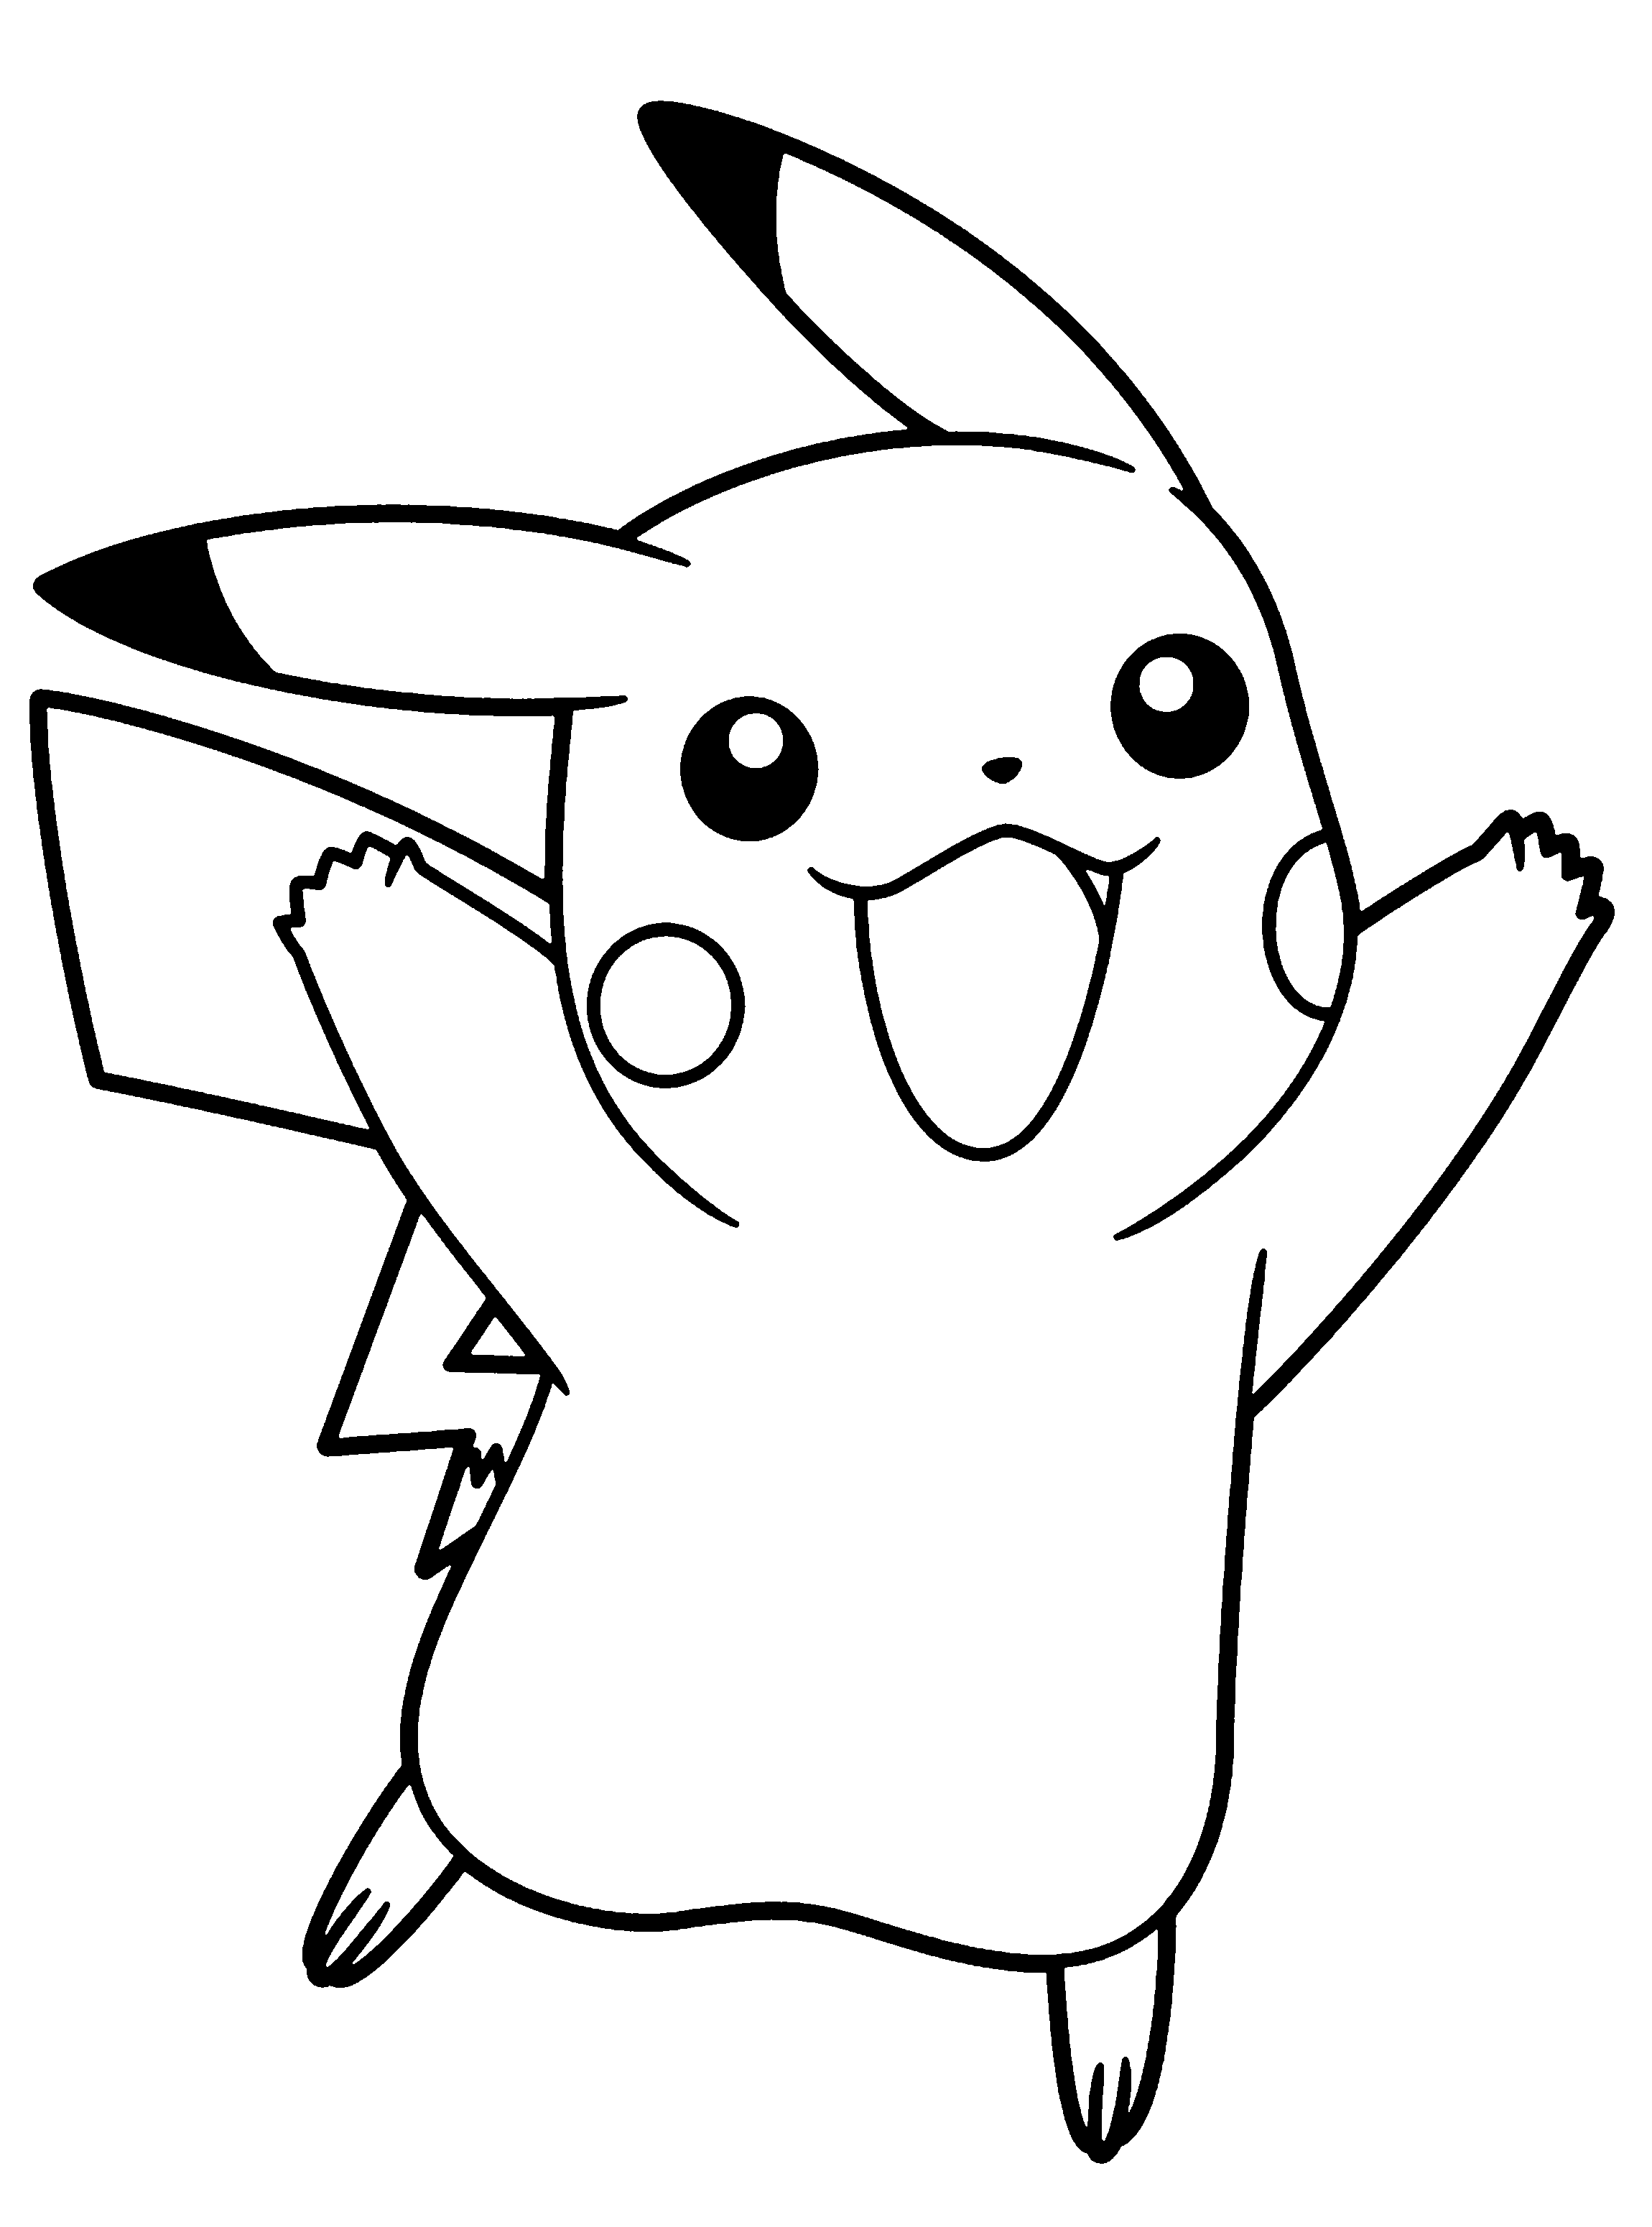 pokemon prints free smiling pokemon coloring pages for kids printable free pokemon free prints 